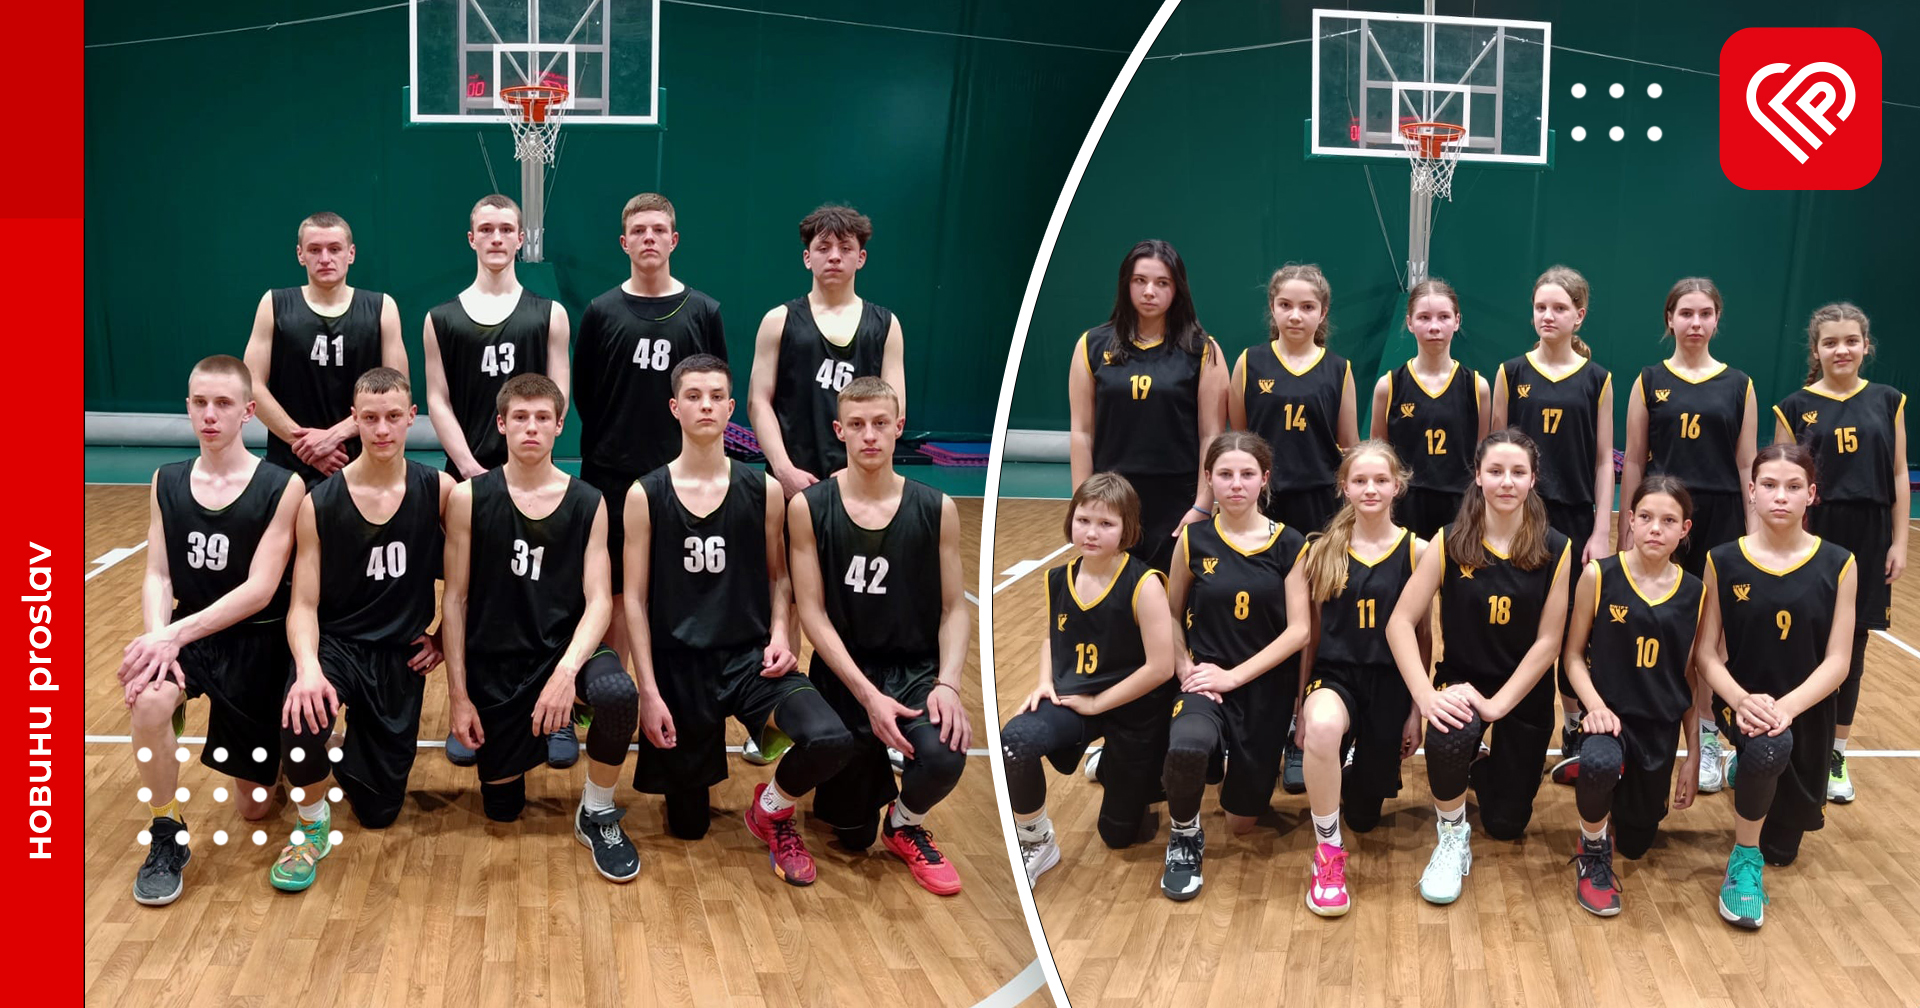 Переяславські баскетболісти здобули три перемоги на відкритому чемпіонаті Київської області (ЮБЛКО)